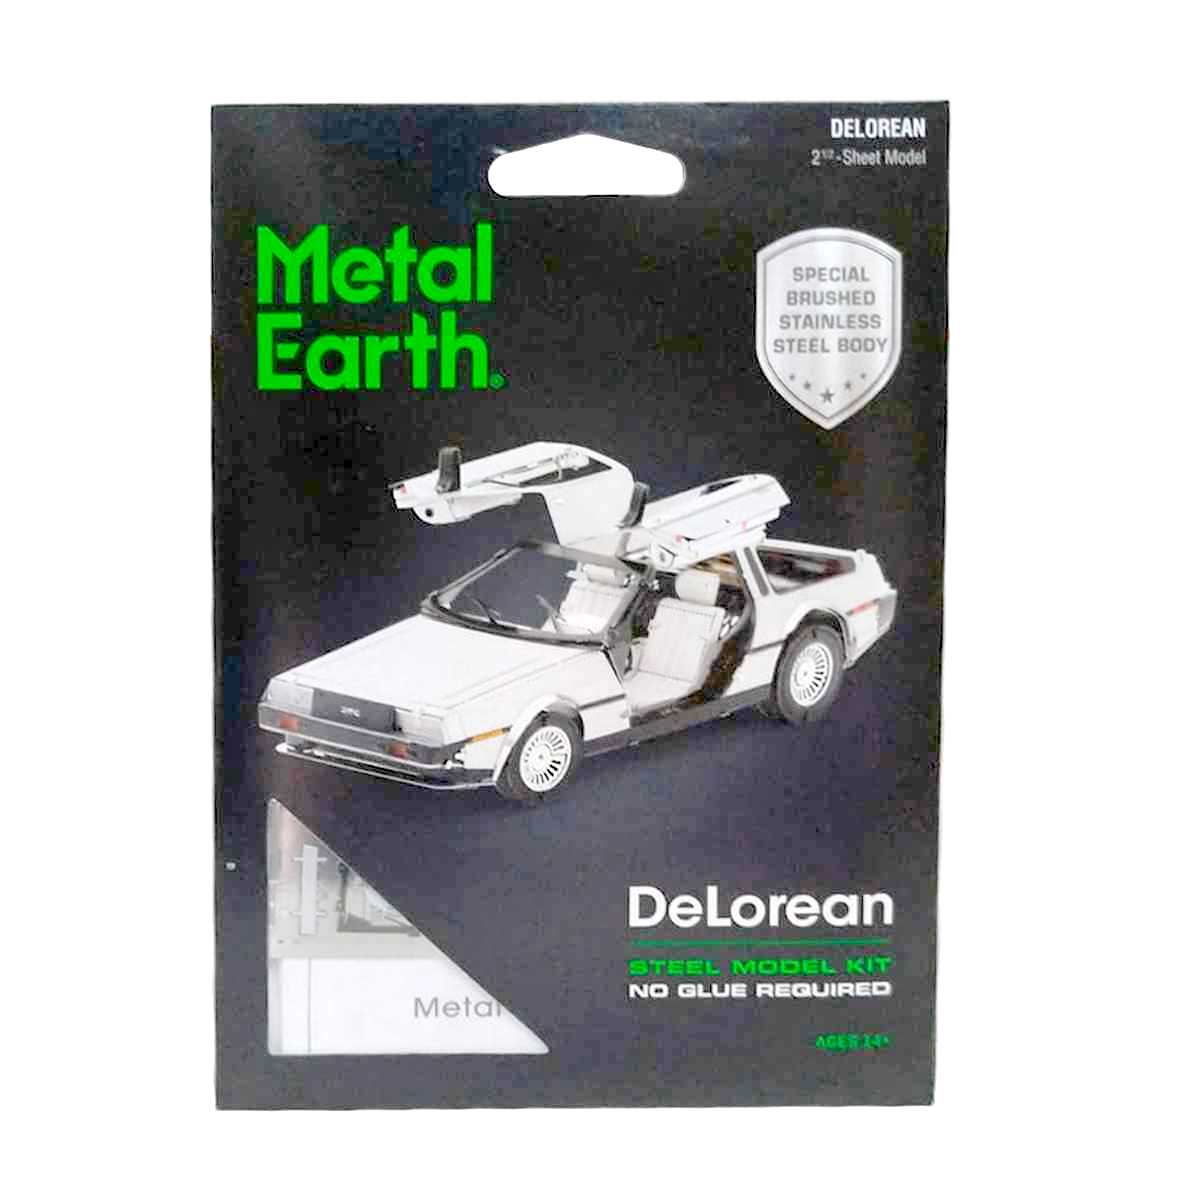 The Delorean Kit em Aço Inox com 80 peças (carro temático do filme De Volta para o Fututo)